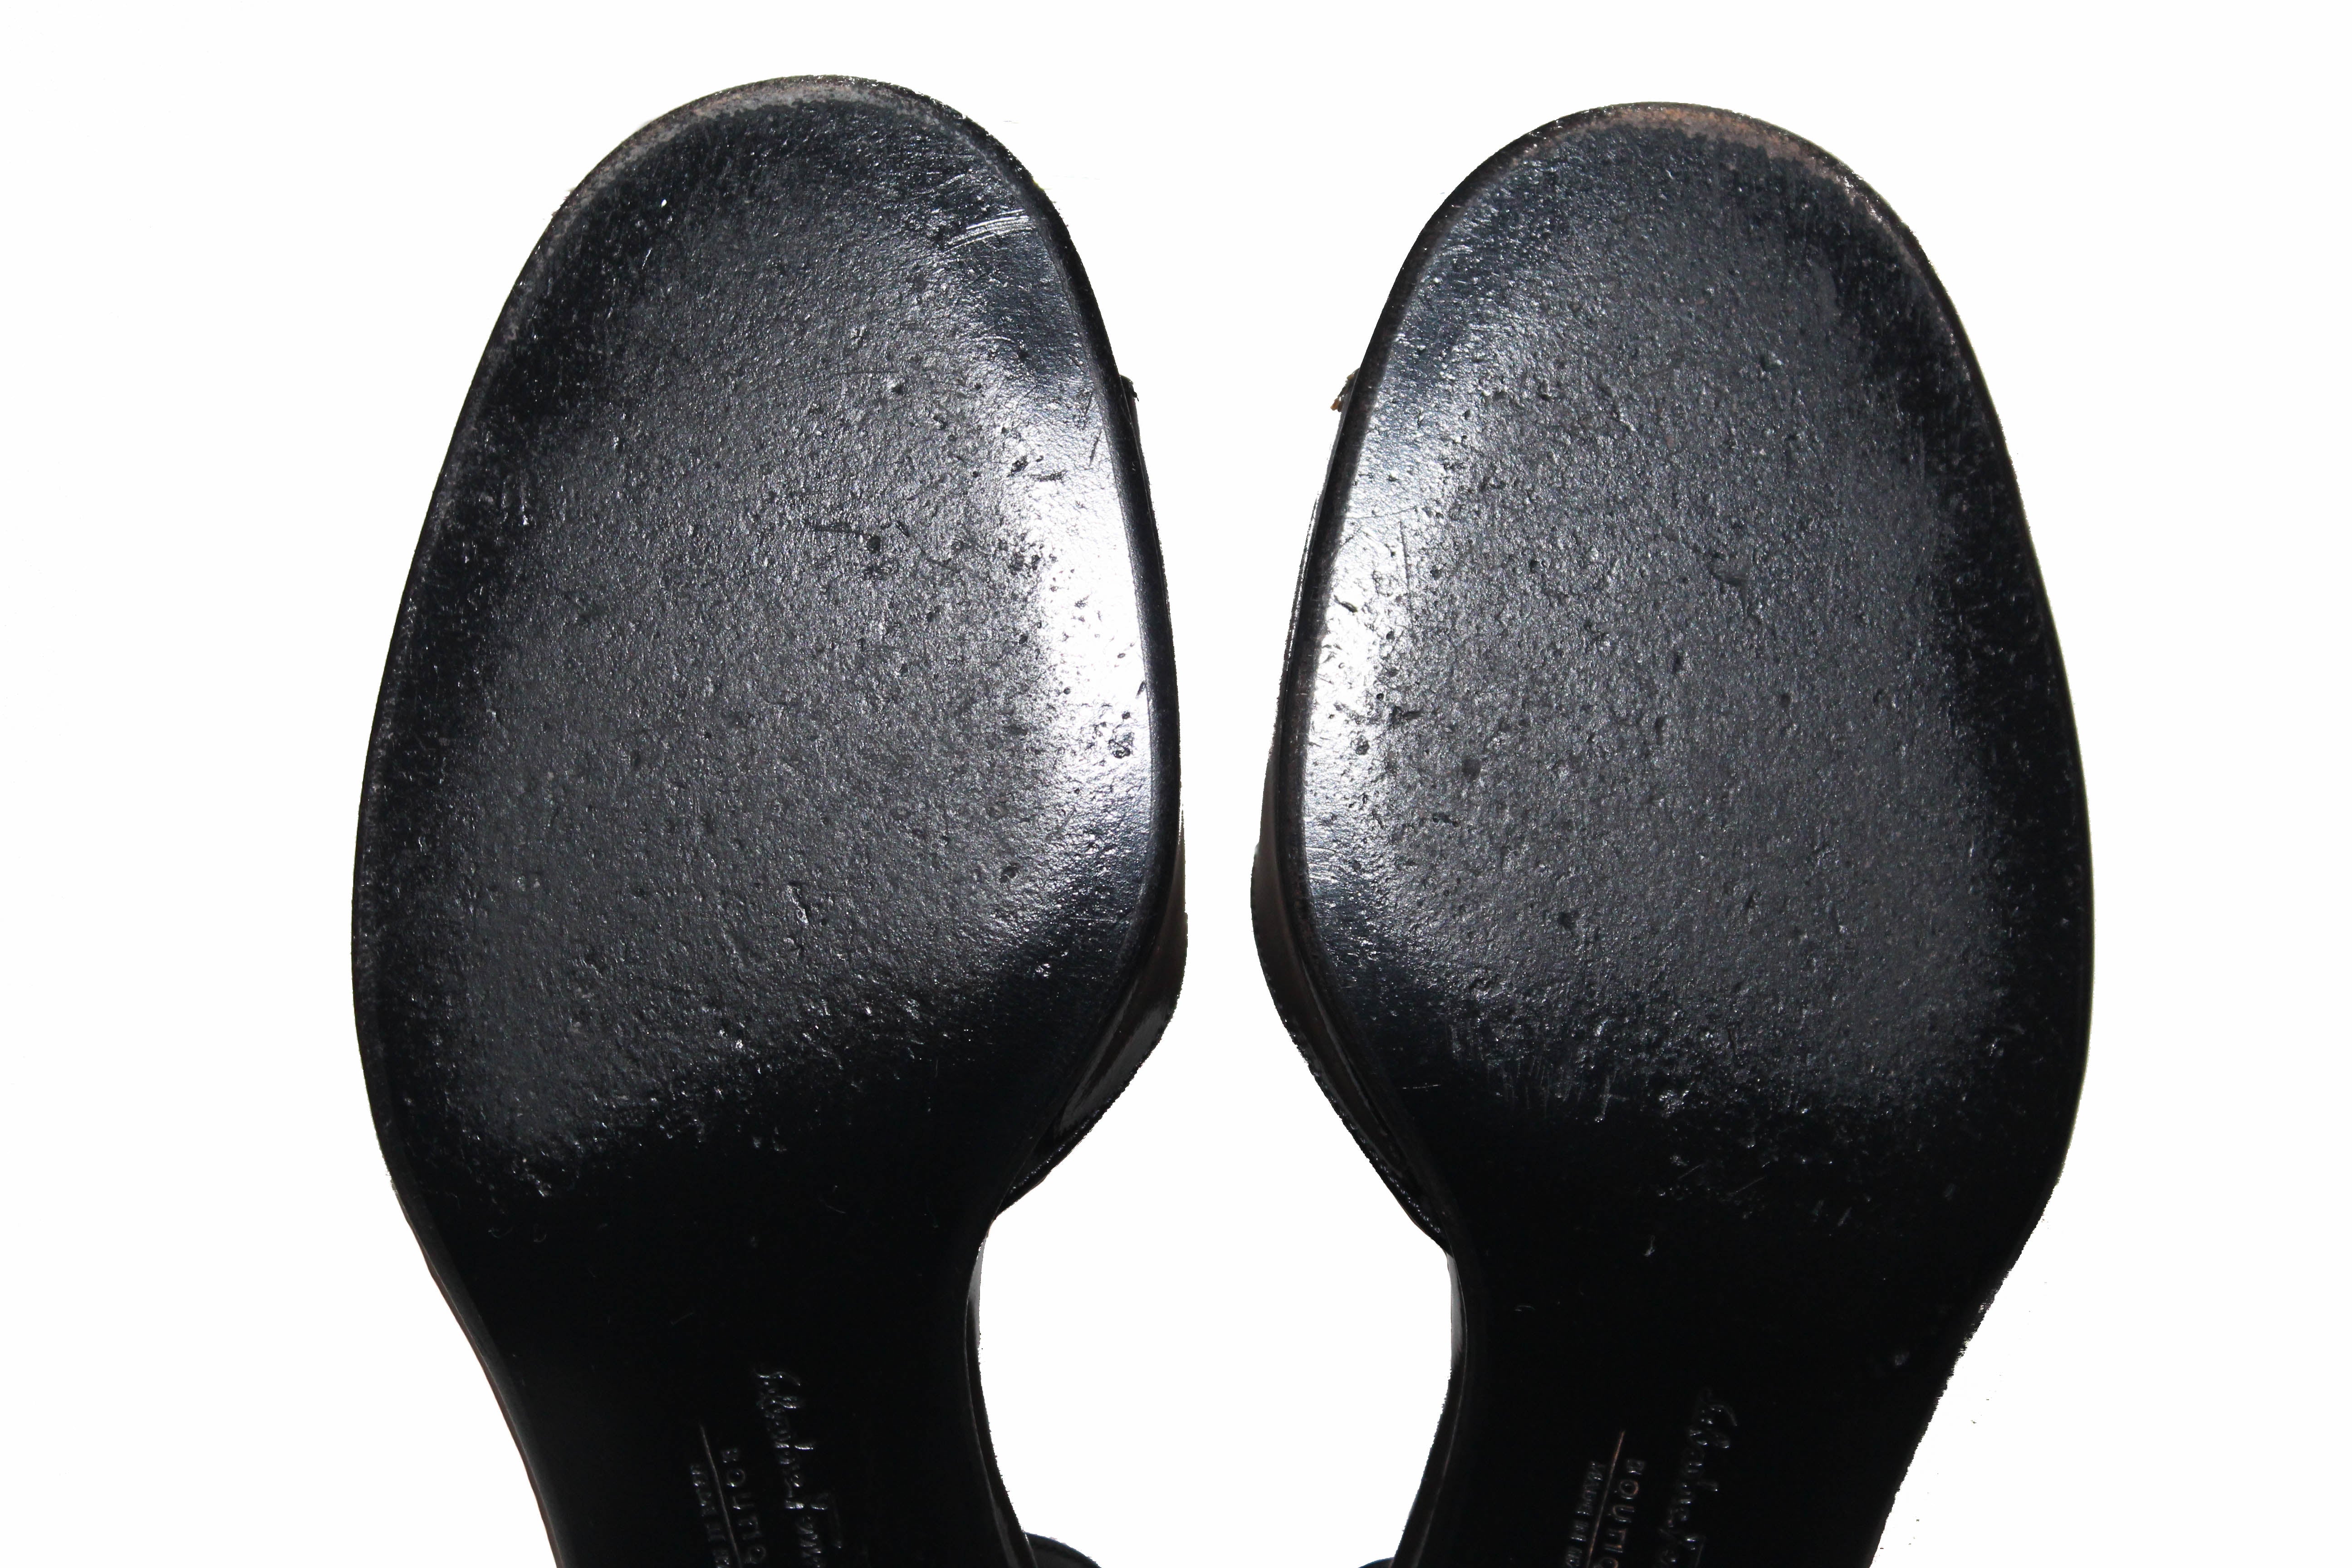 Authentic Salvatore Ferragamo Boutique Black Patent Leather Bow Slingback Sandal 5.5 B